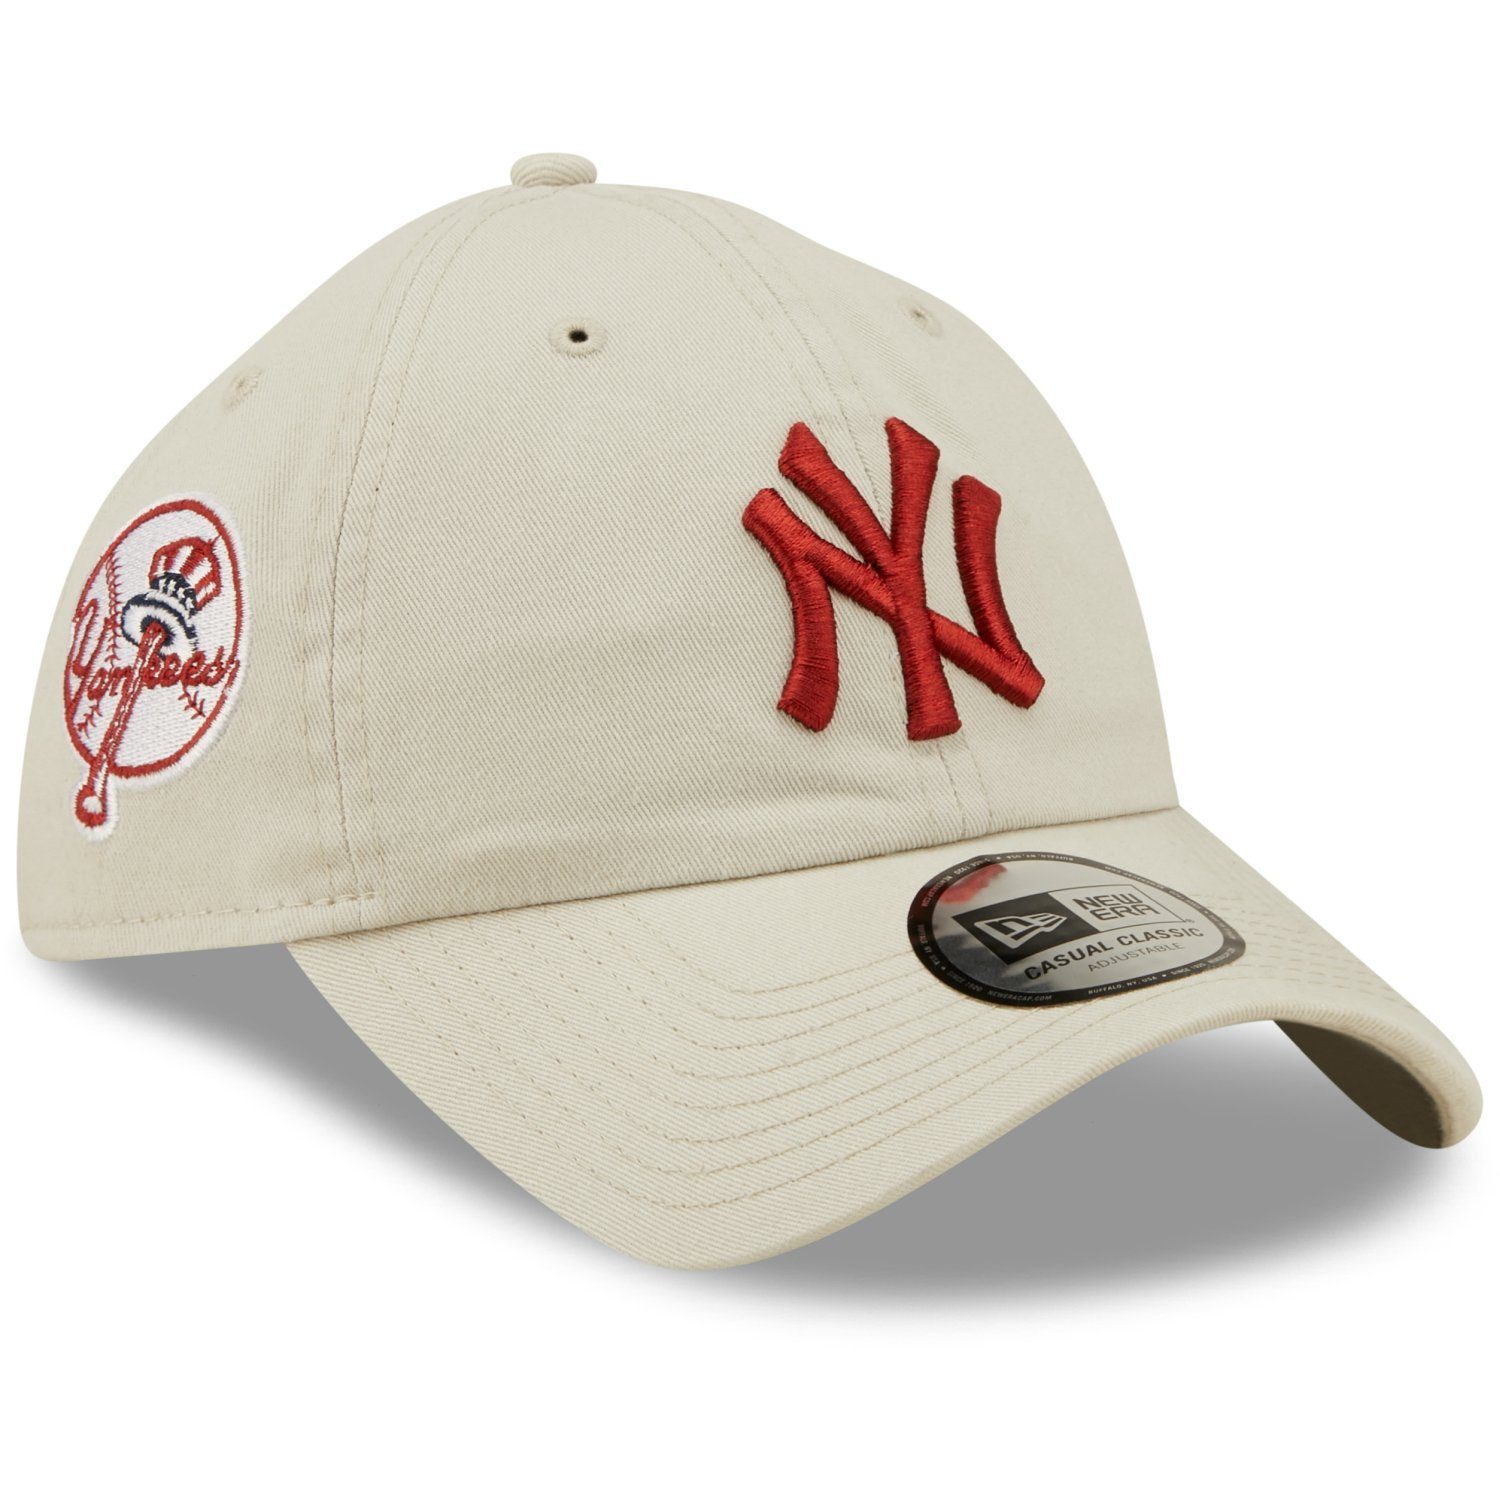 Classics Era Cap Yankees Baseball Casual York New New